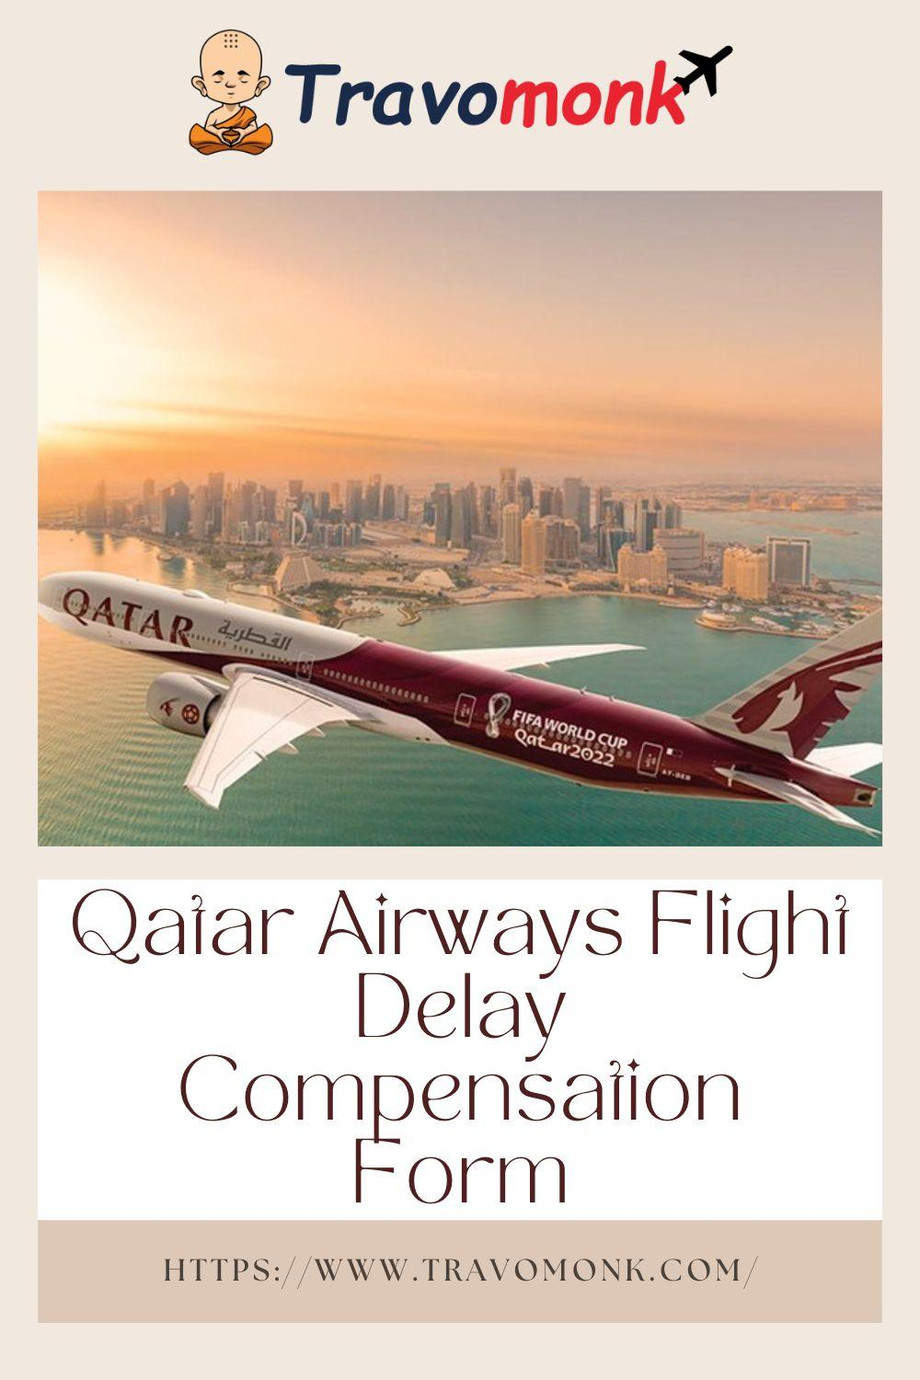 qatarairwaysflightdelaycompensationform1.jpg